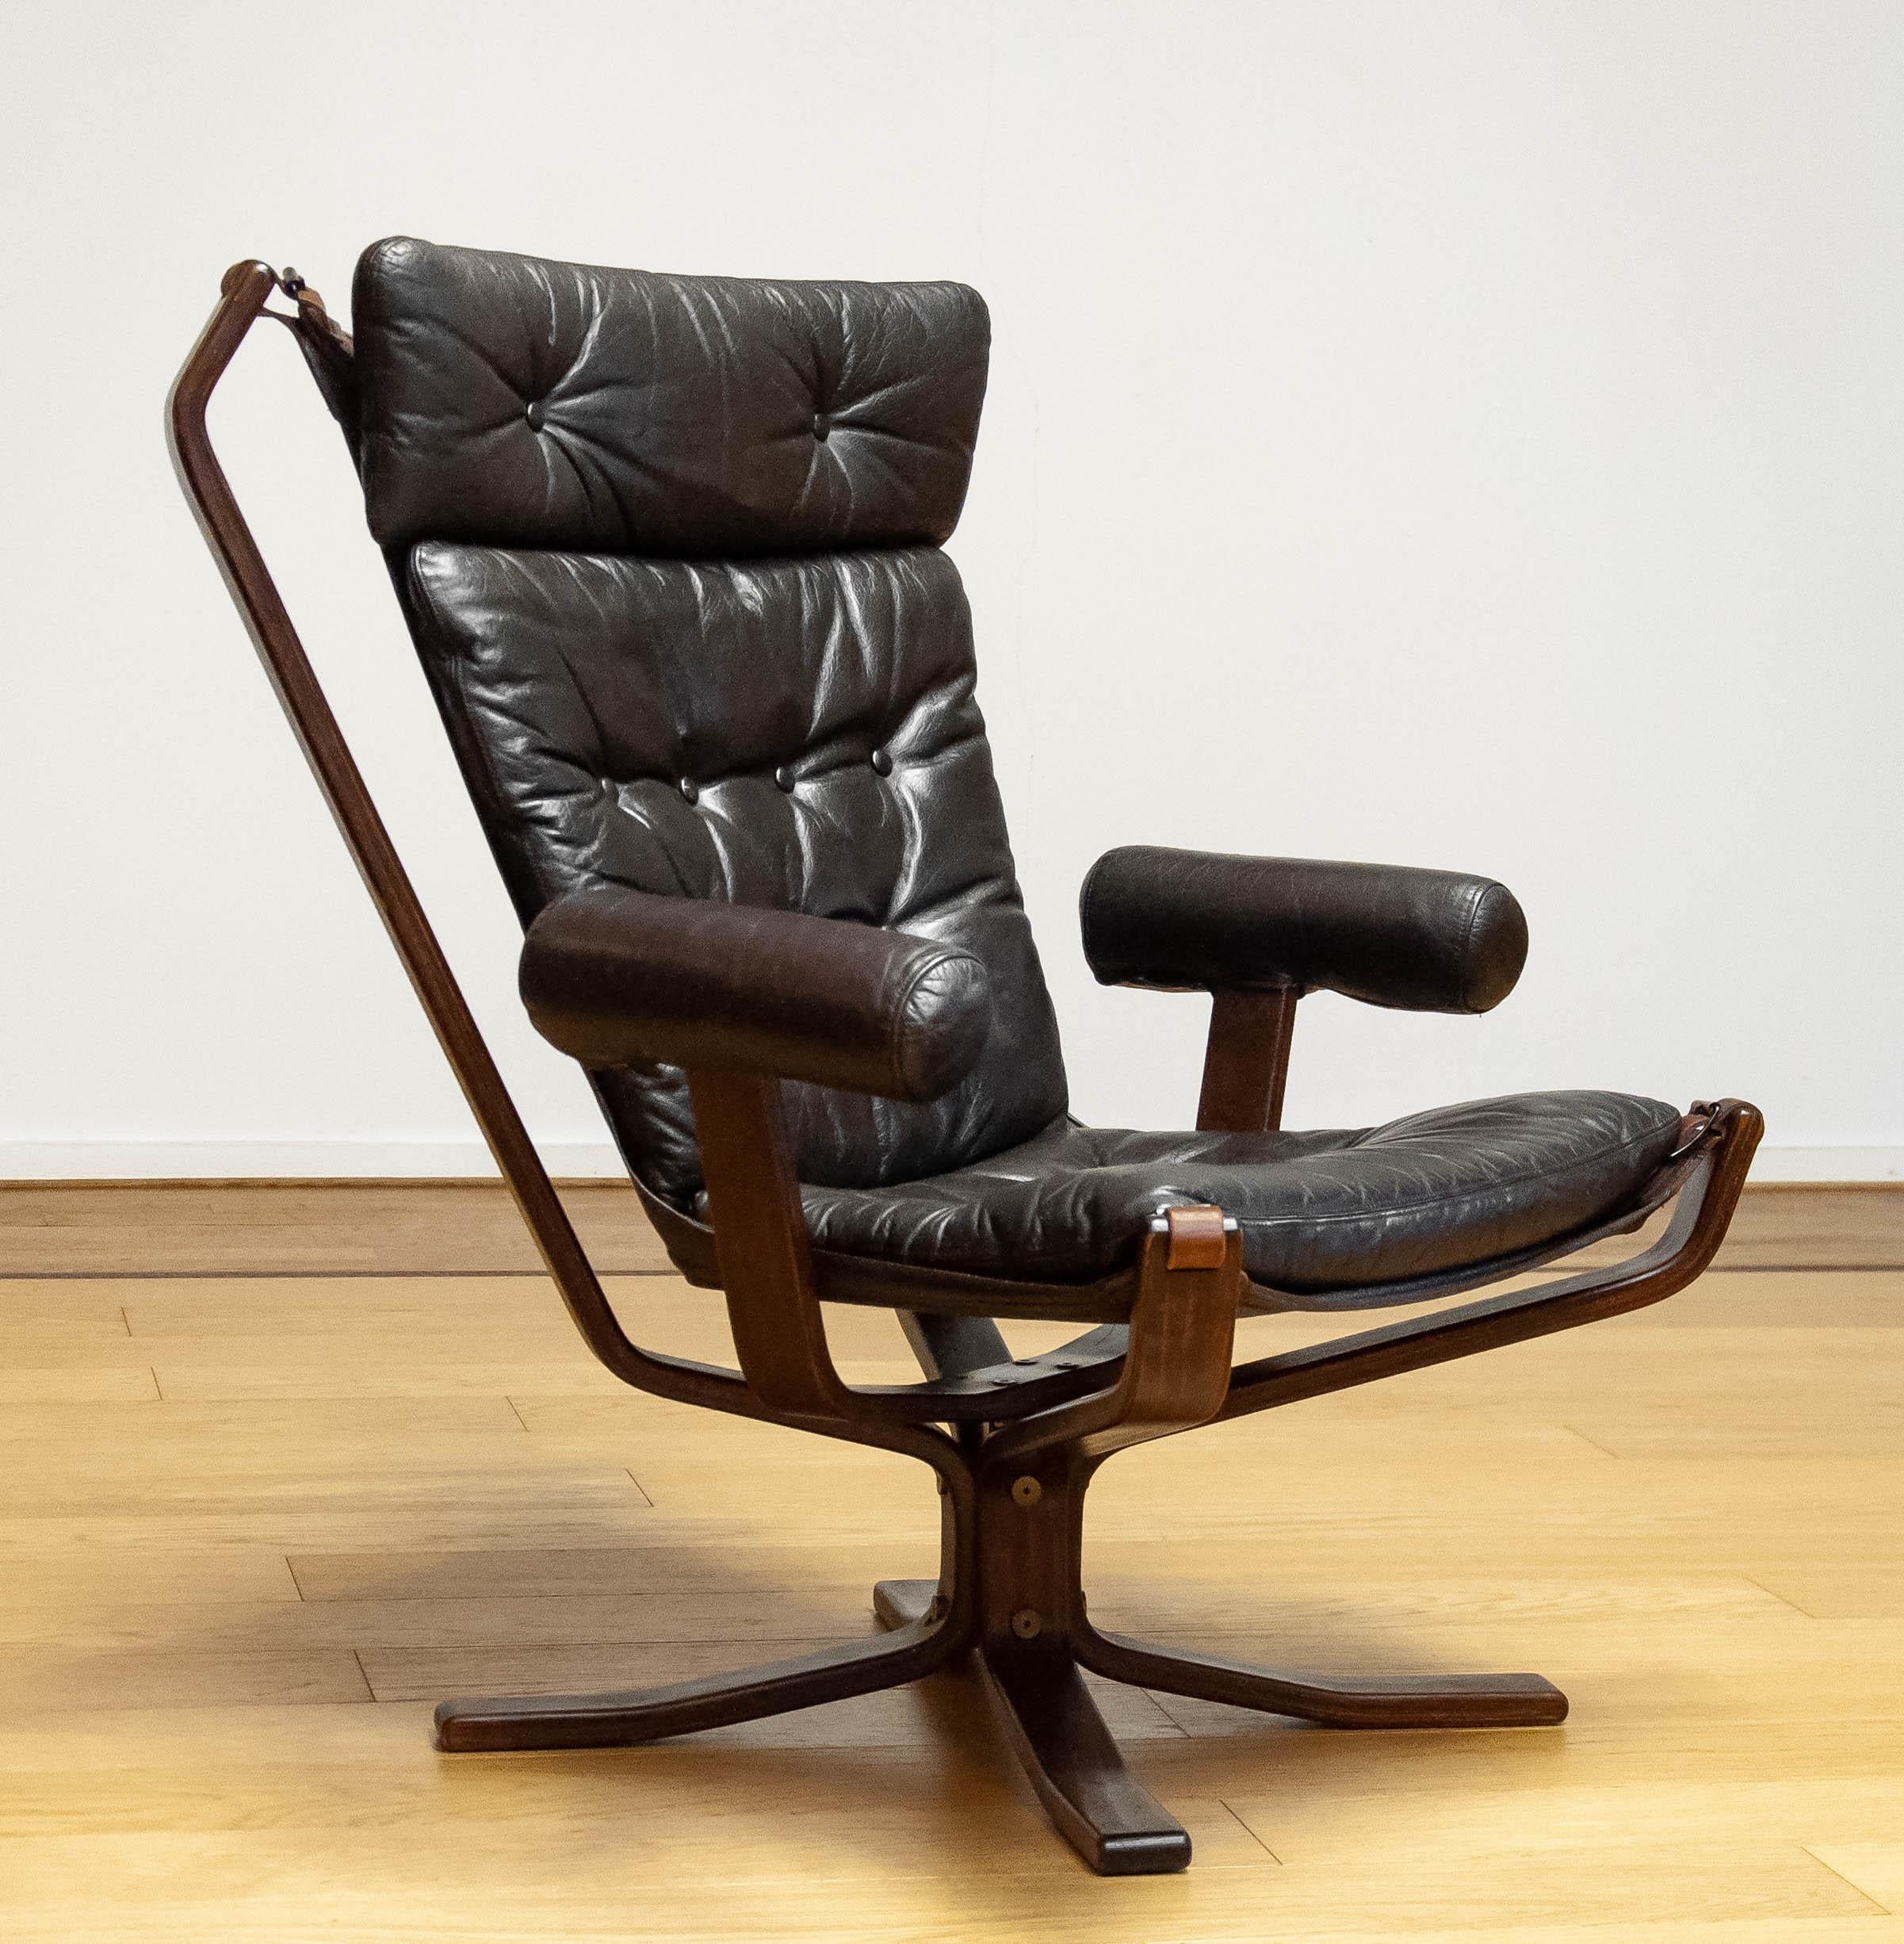 Schöner, seltener Sessel Modell 'Superstar', entworfen von Sigurd Ressel und hergestellt von Trygg Mobler in Dänemark.
Diese Modelle wurden in limitierter Auflage hergestellt.
Auch bekannt unter dem Namen 